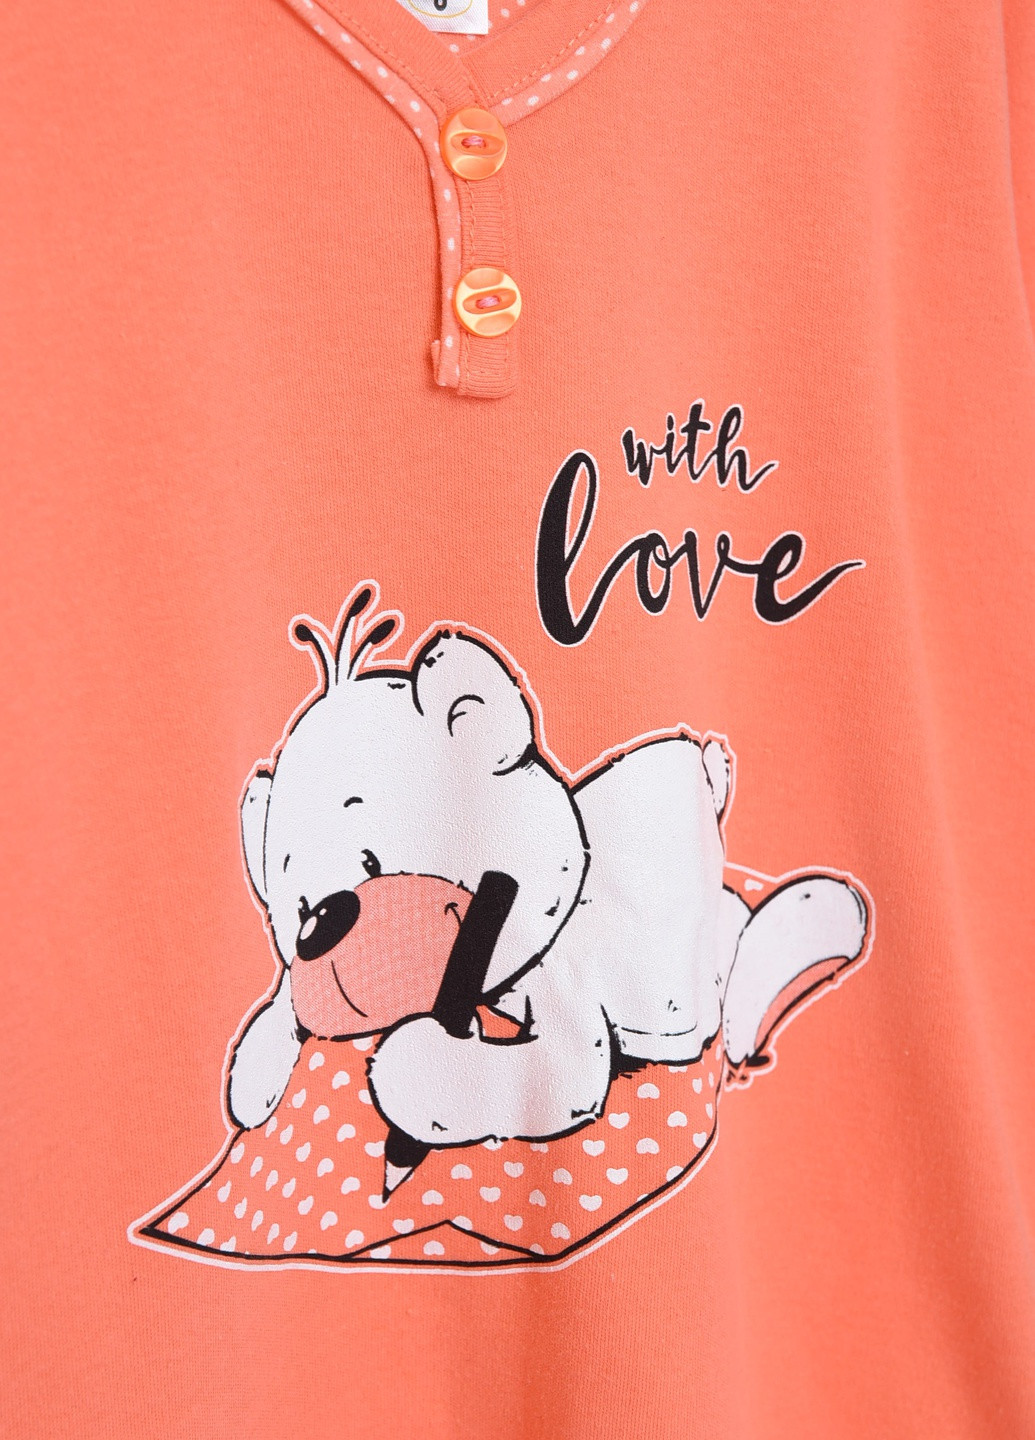 Оранжевая всесезон пижама детская оранжевого цвета с рисунком Let's Shop